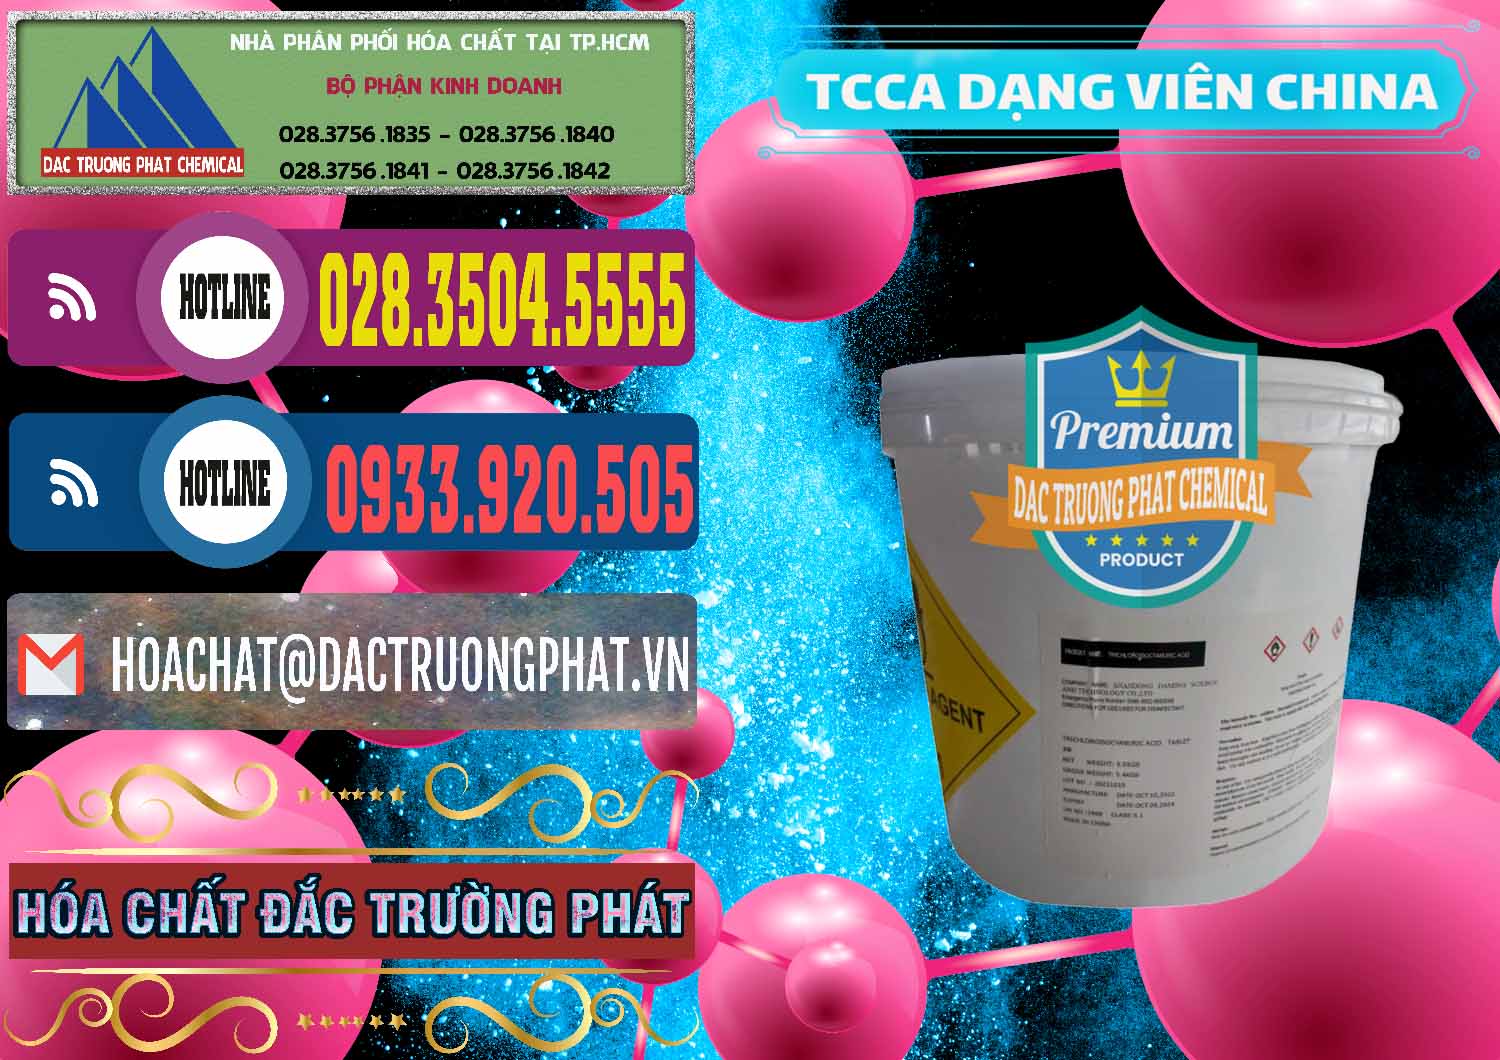 Công ty chuyên bán _ phân phối TCCA - Acid Trichloroisocyanuric Dạng Viên Thùng 5kg Trung Quốc China - 0379 - Công ty cung cấp & phân phối hóa chất tại TP.HCM - muabanhoachat.com.vn